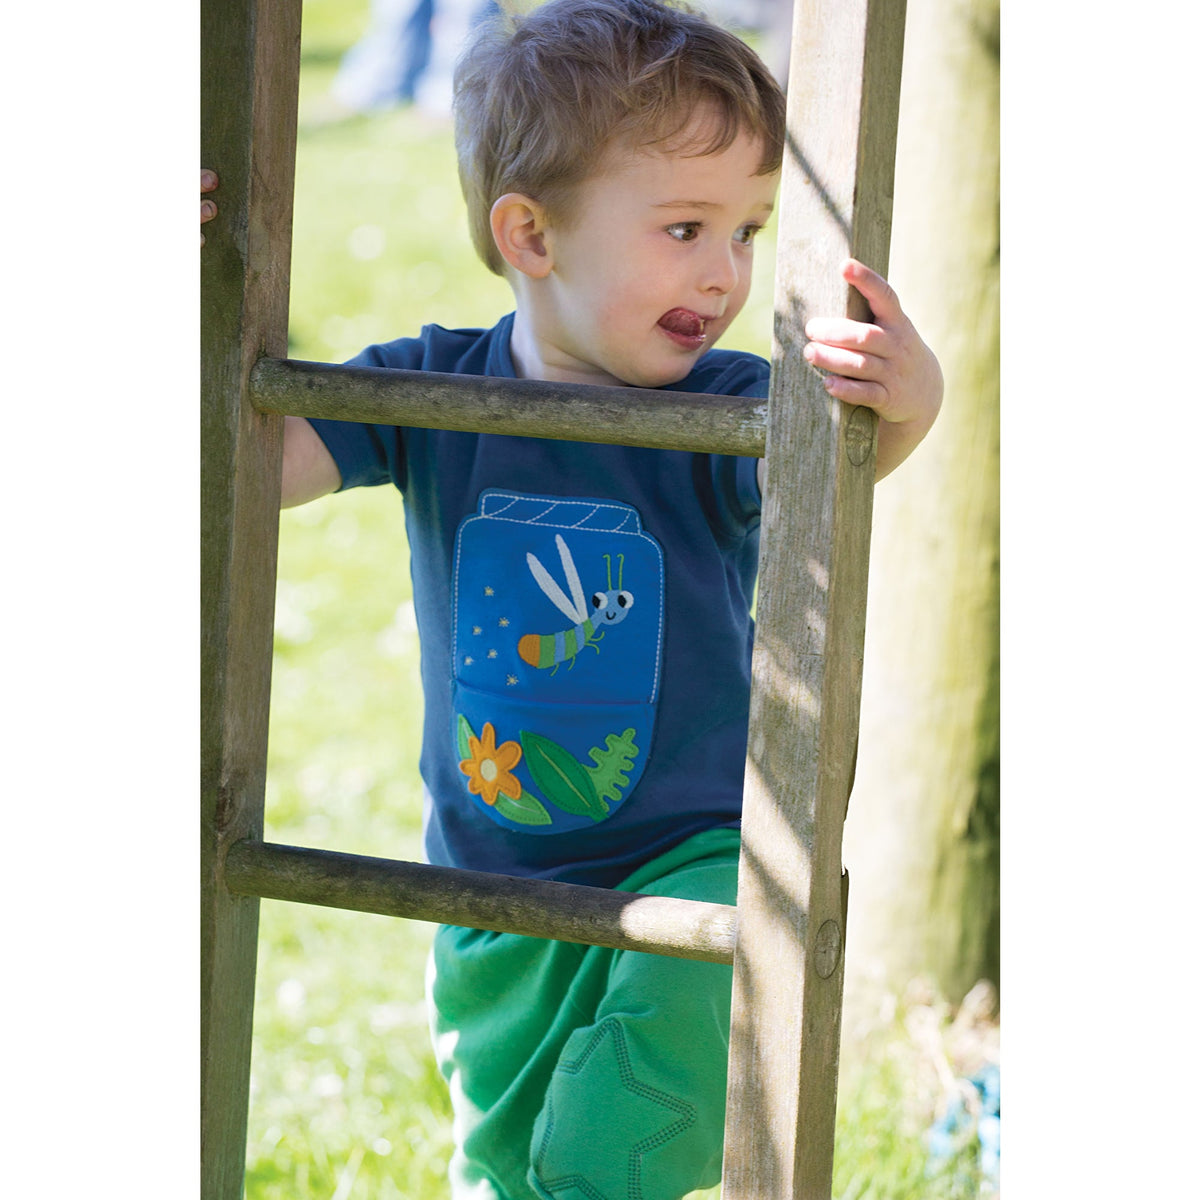 Junge mit dunkelblaues kurzarmshirt mit Leuchtkäfer applikation von der Marke Frugi